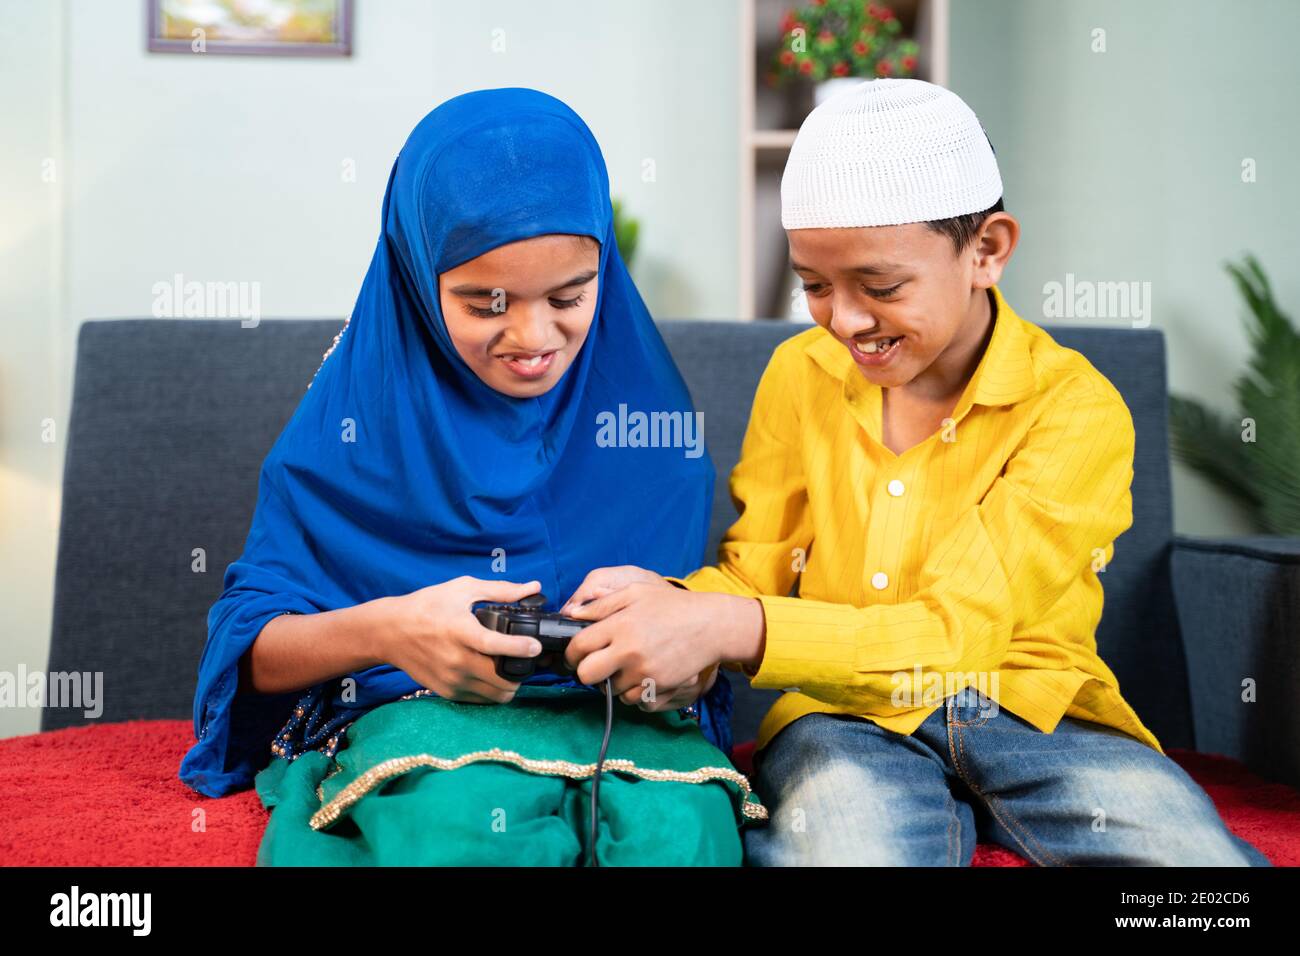 Un frère musulman se moque de sa sœur pour jouer à la vidéo Jeu à la maison - concept de lutte des enfants frères et sœurs Banque D'Images